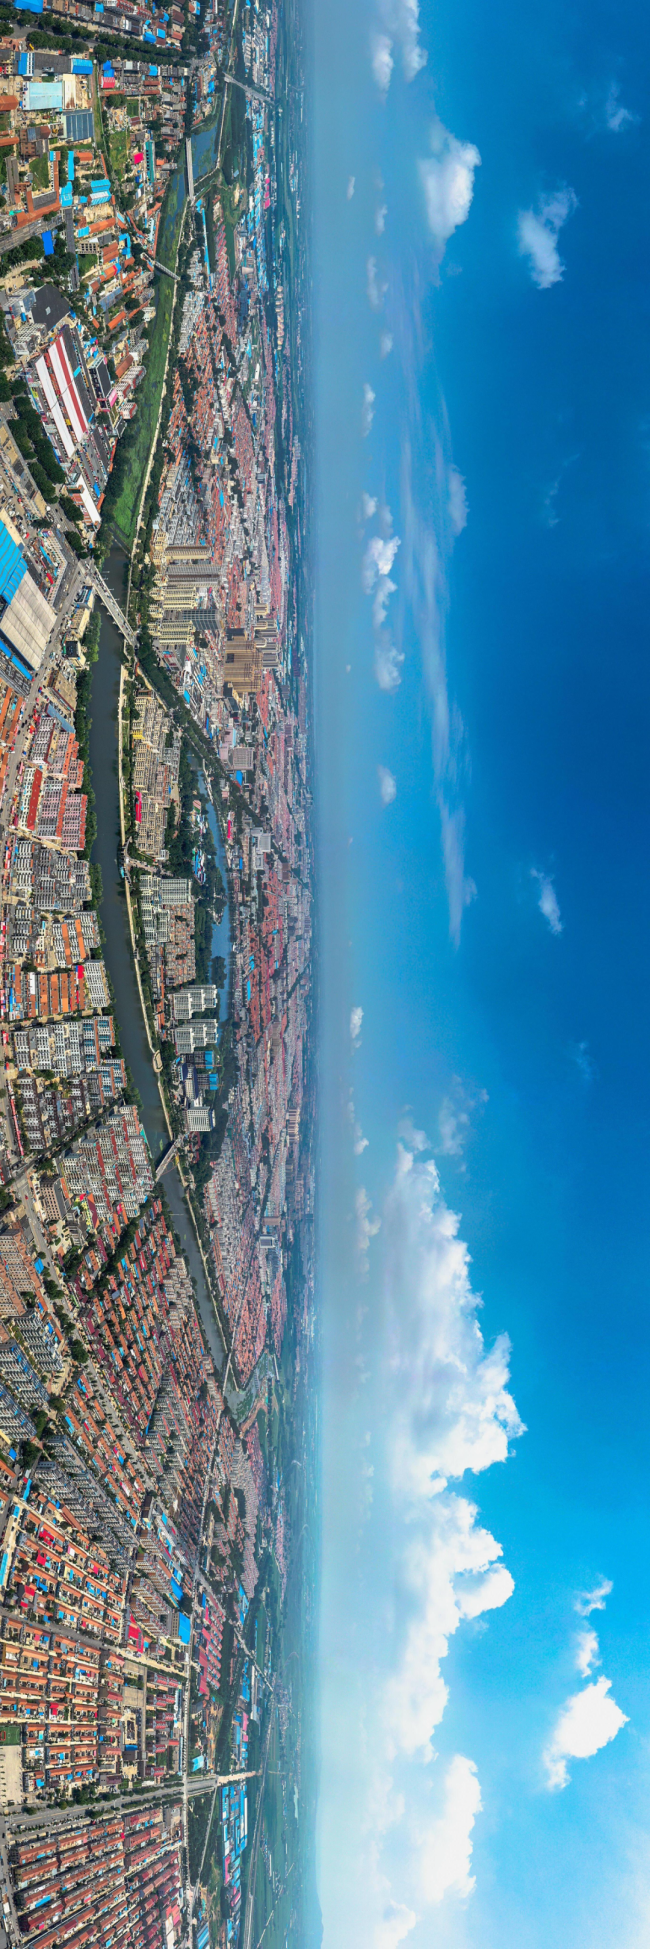 青岛莱西将聚焦“六大发展定位”，打造胶东半岛中心区域经济隆起带